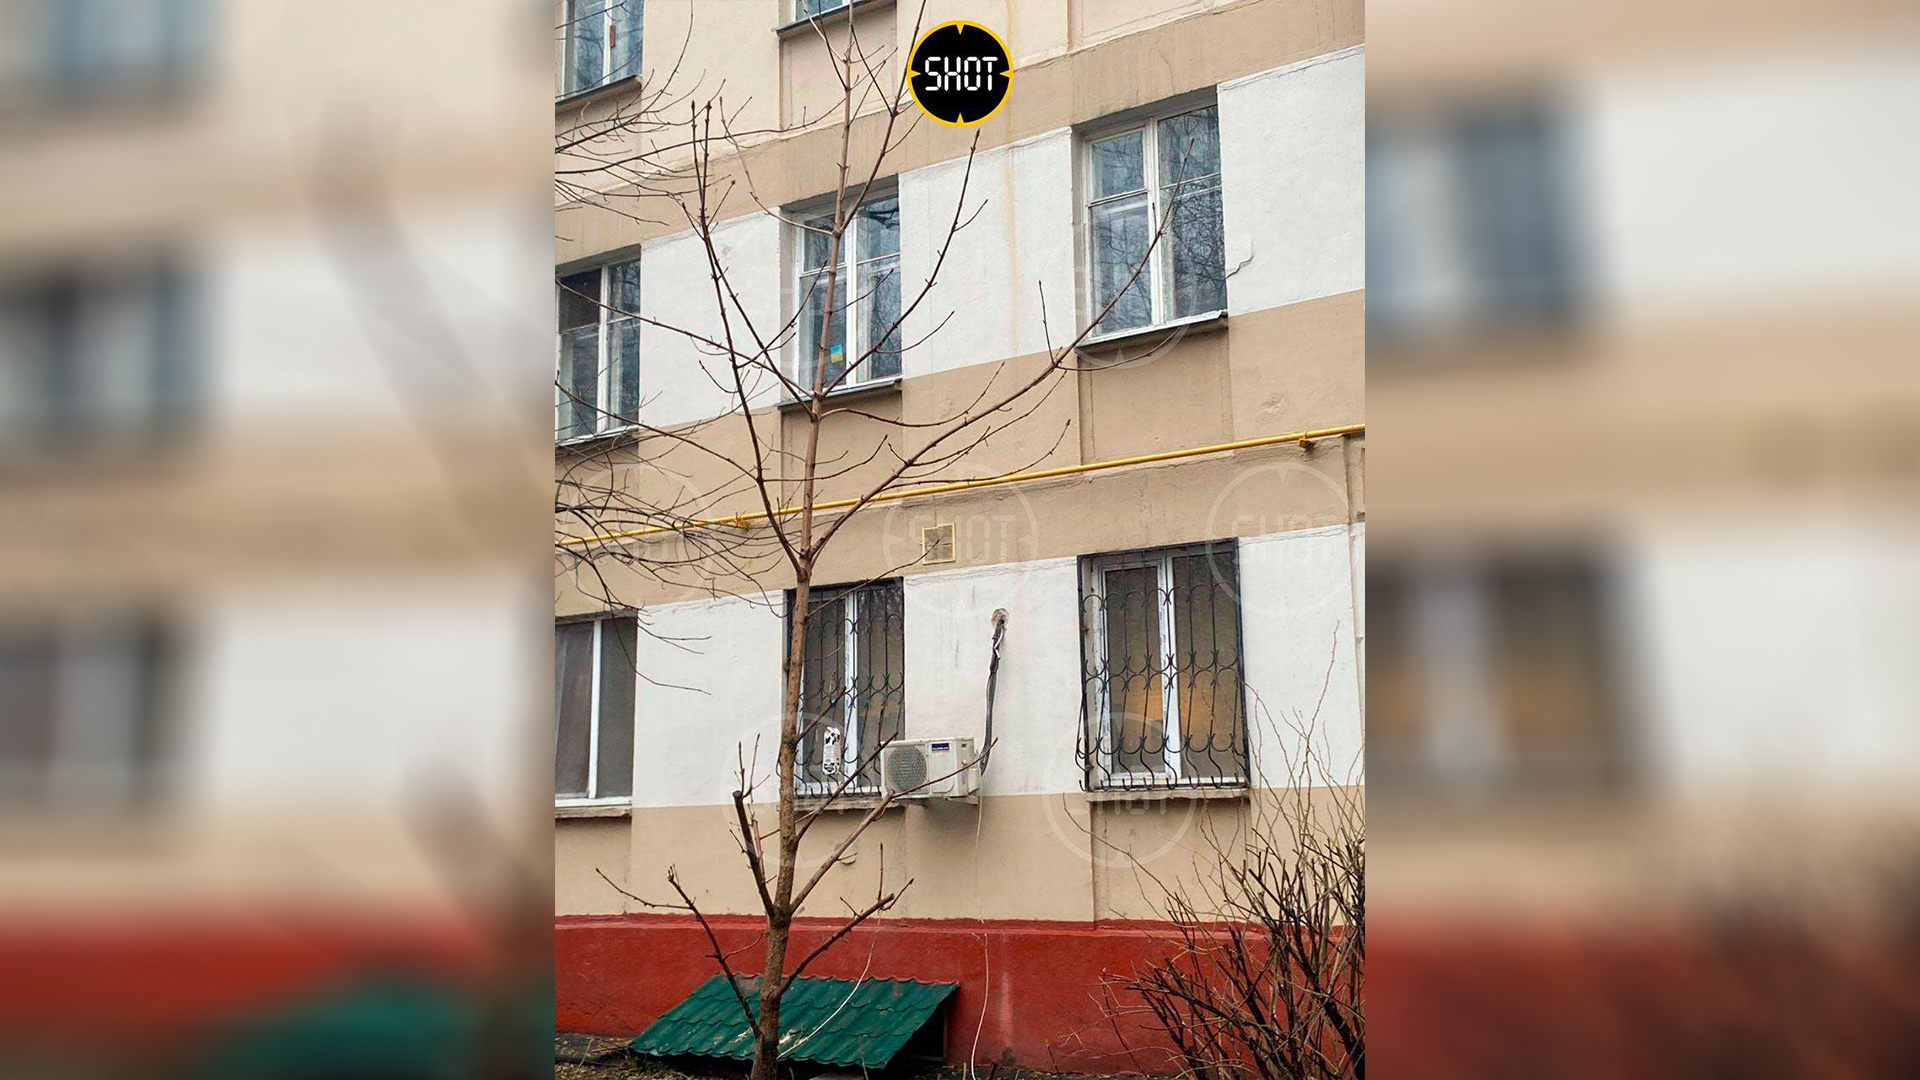 Дом на проспекте Мира, жительница которого украсила окно жёлто-синим знаком. Фото © Telegram / SHOT